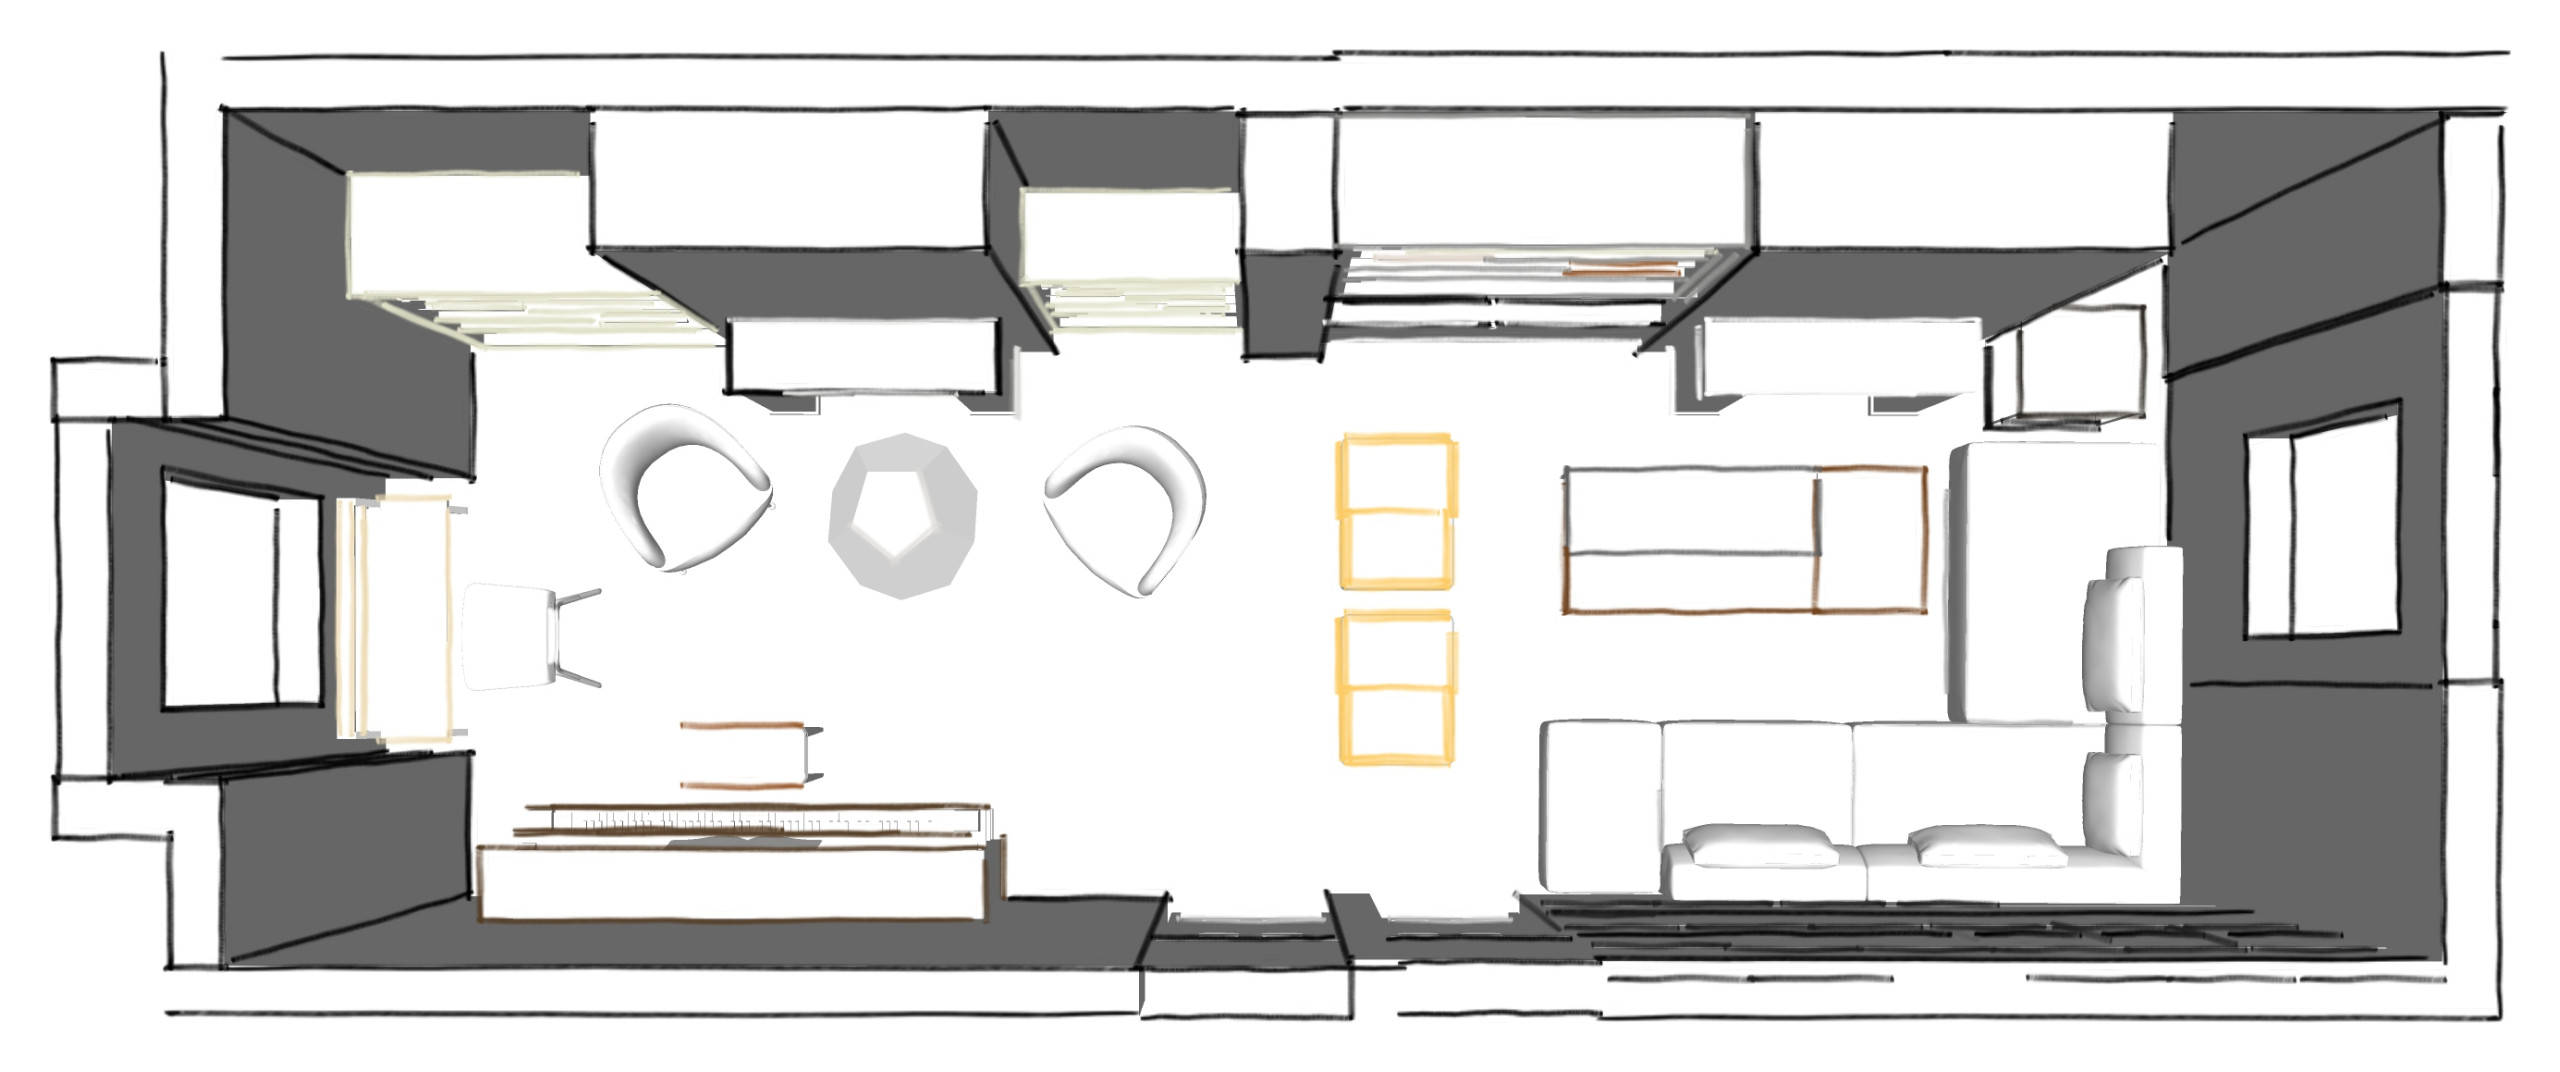 Living room Design Proposal